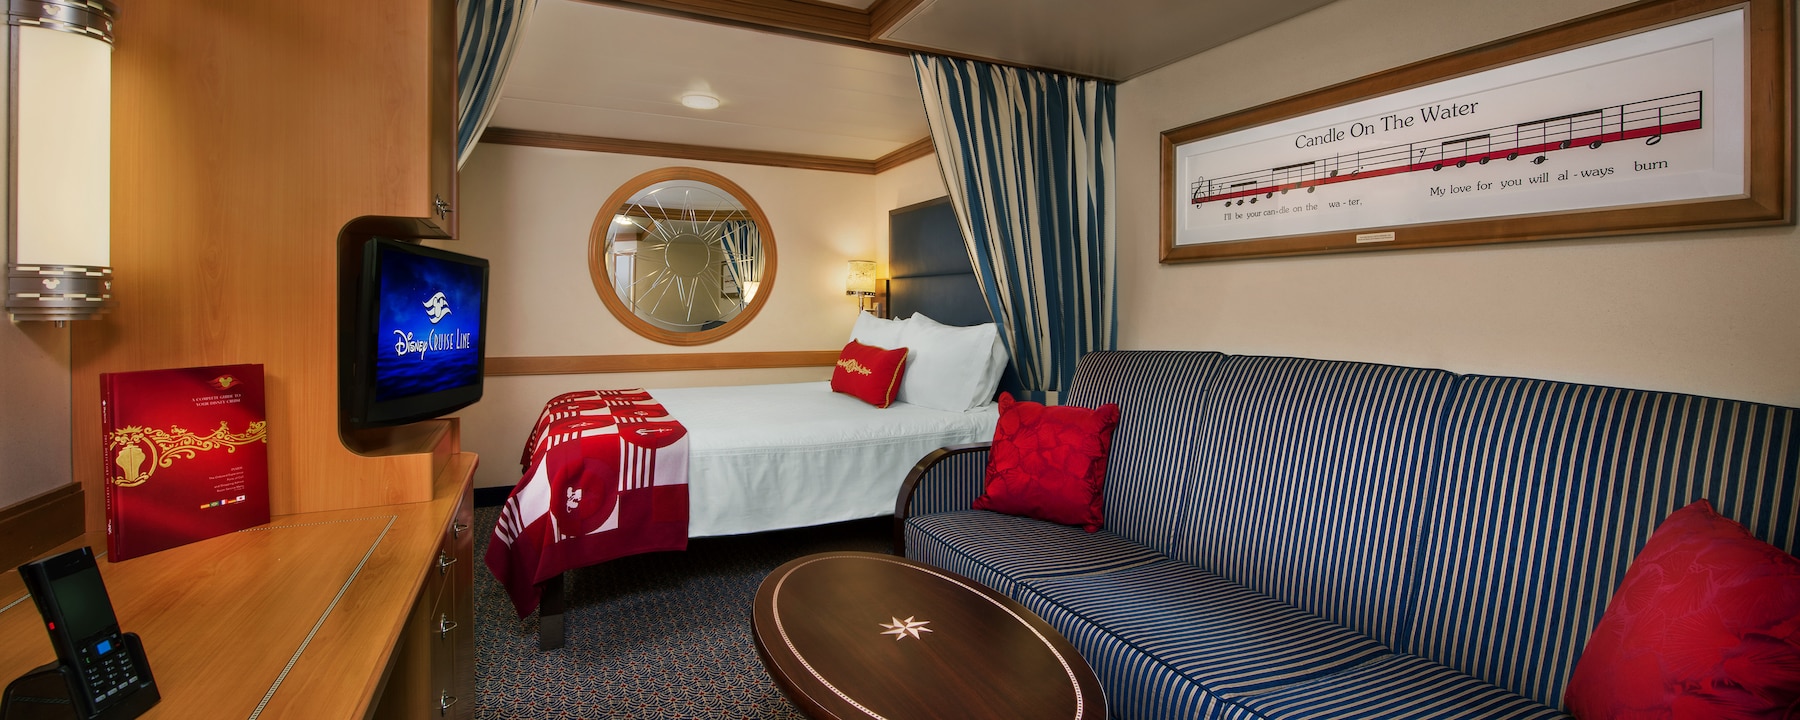 disney cruise line room reviews